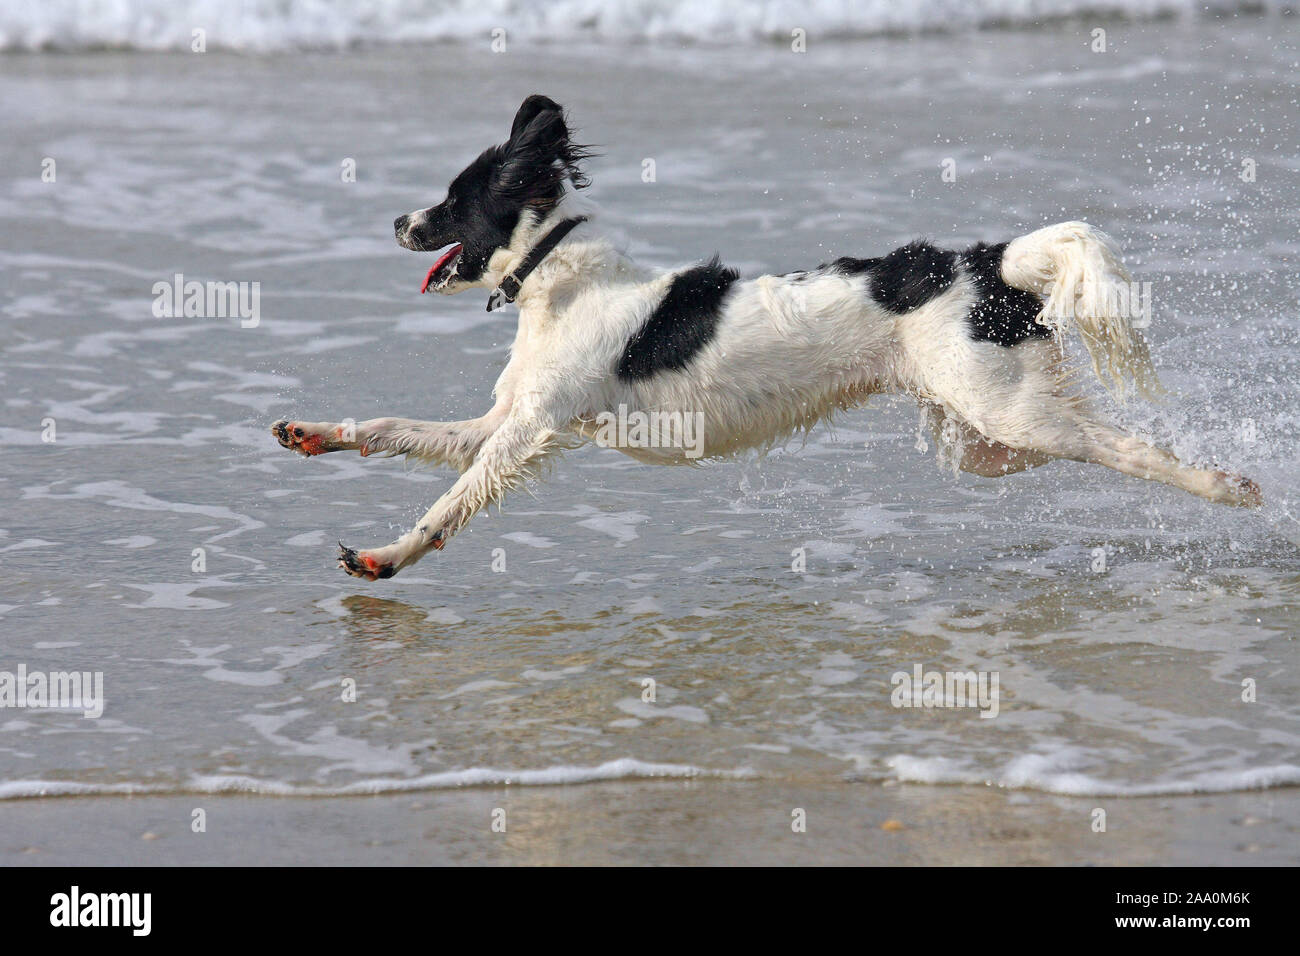 Hund rennt im Meer, Nordsee Stock Photo